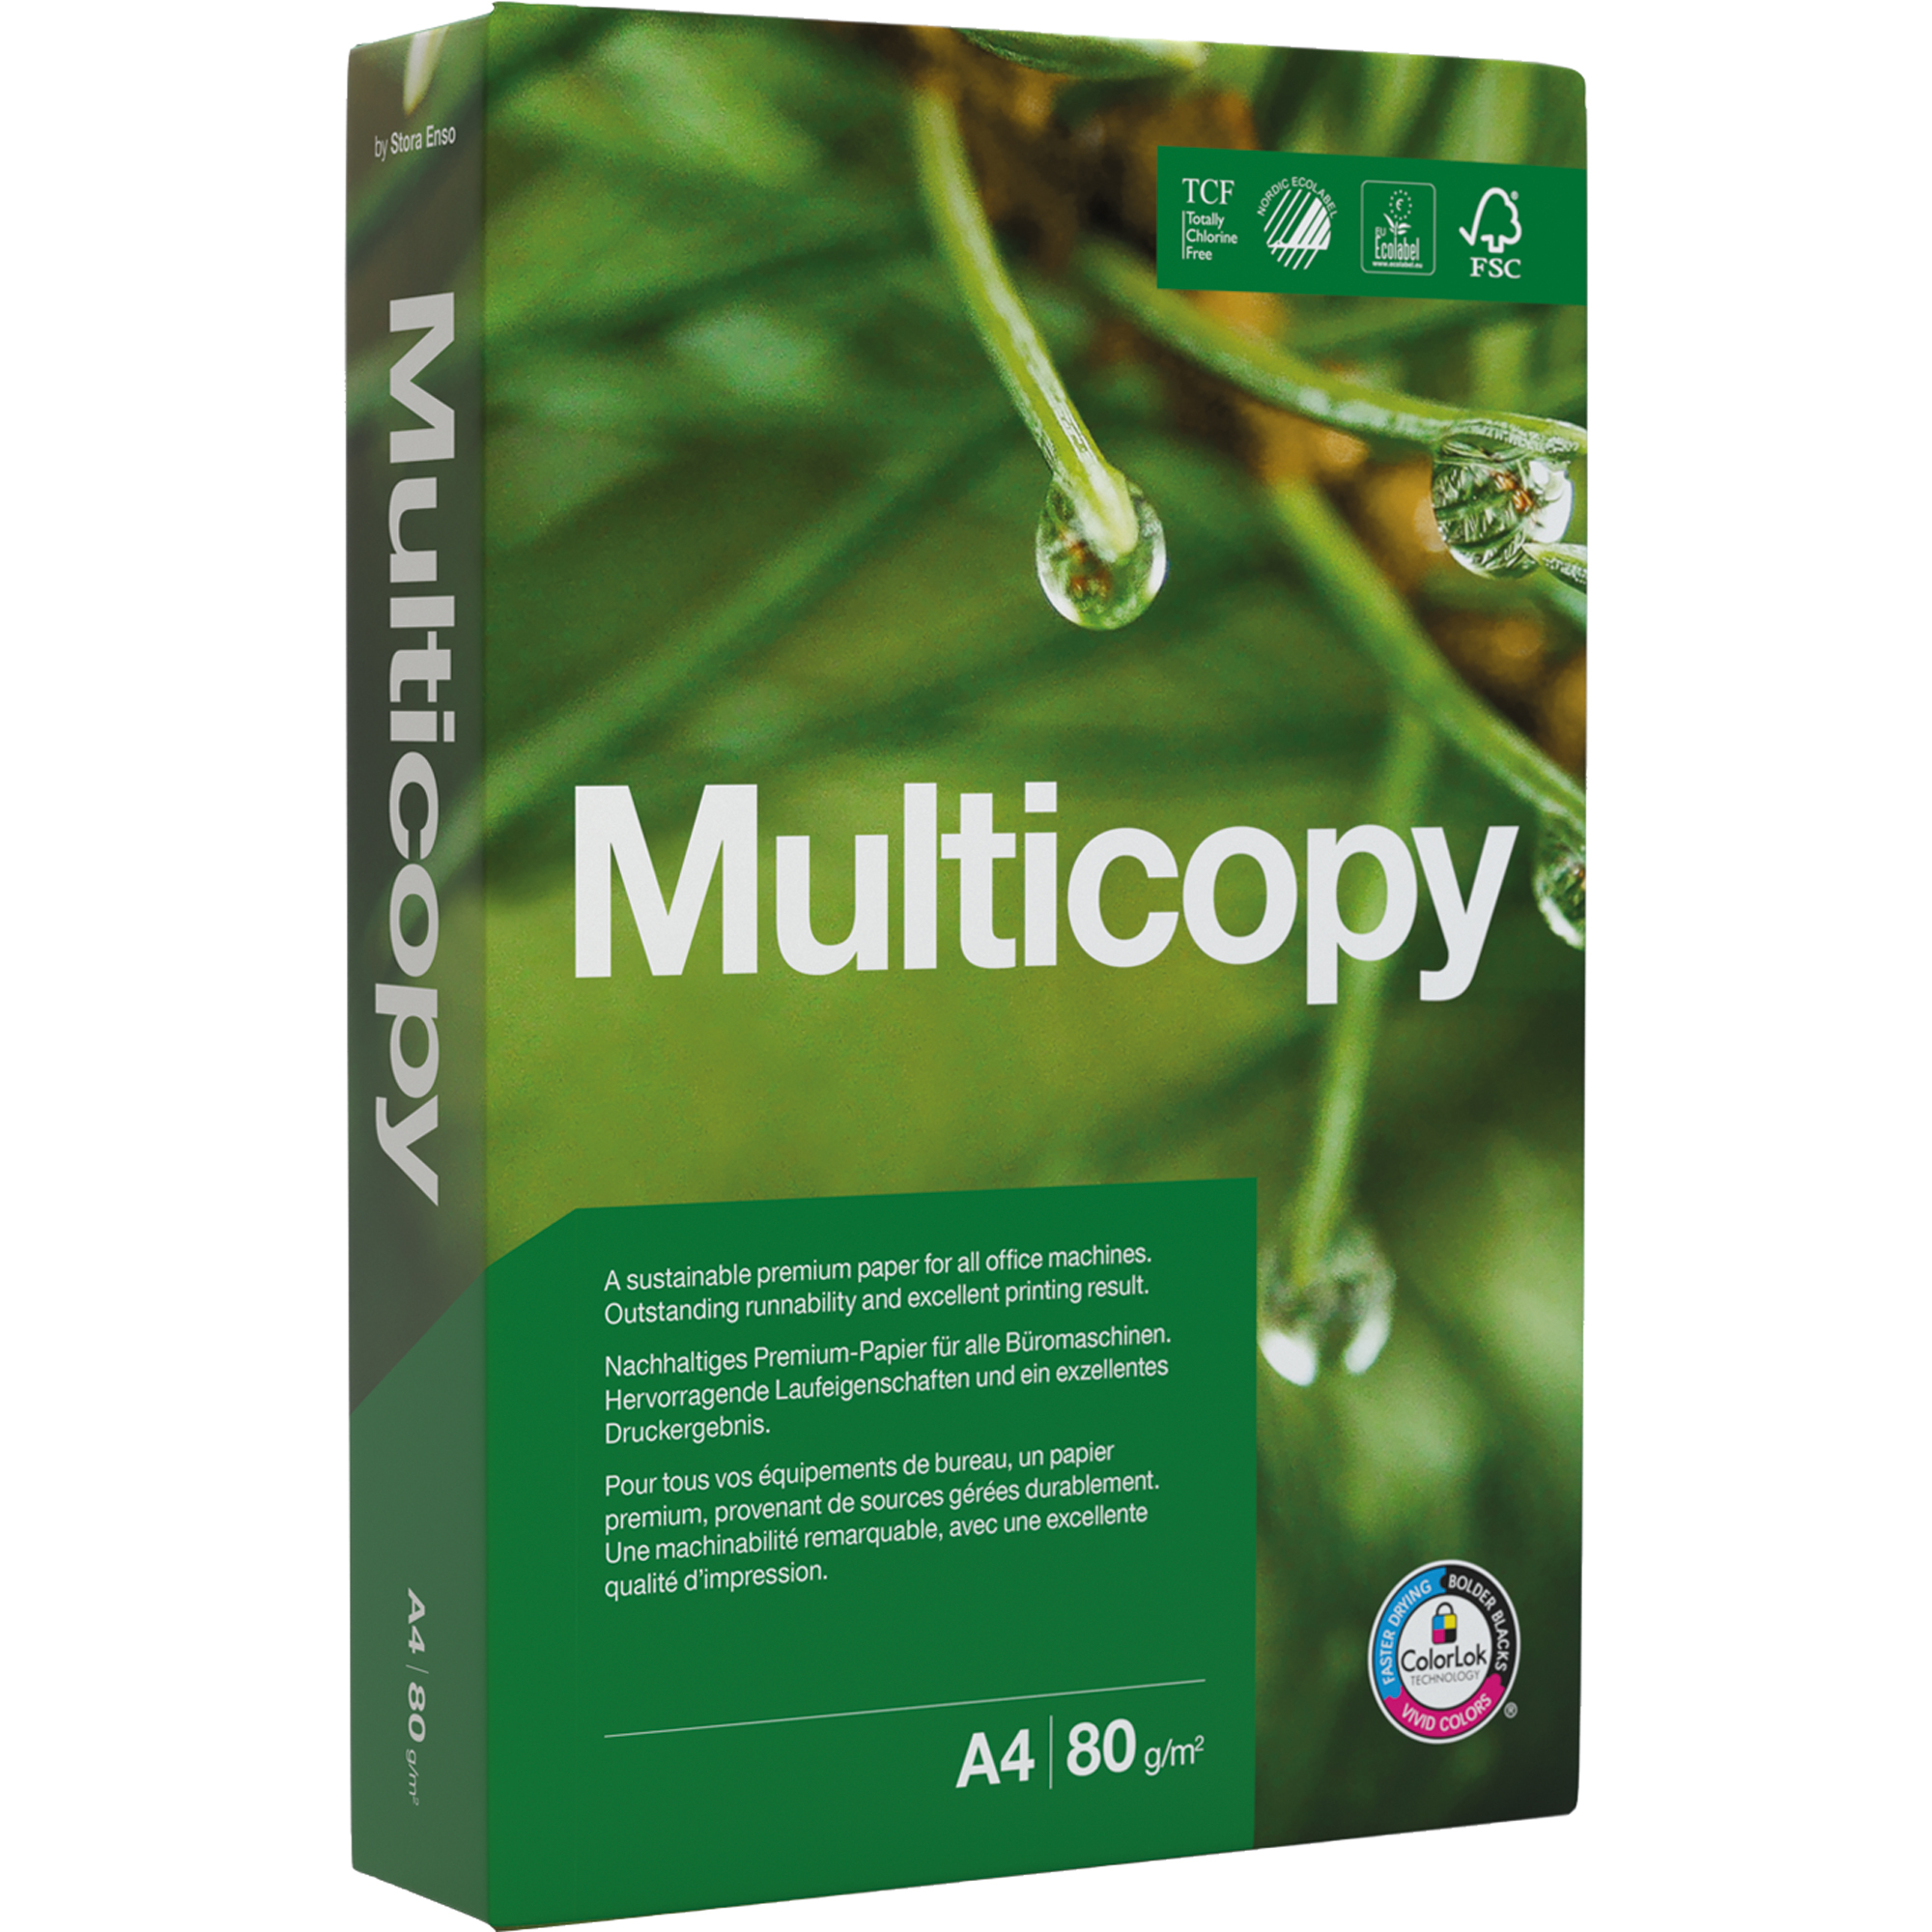 MULTICOPY Kopierpapier 297 157900 210 1 mm Packung 500Bl. x A4 A4 Kopierpapier 80g